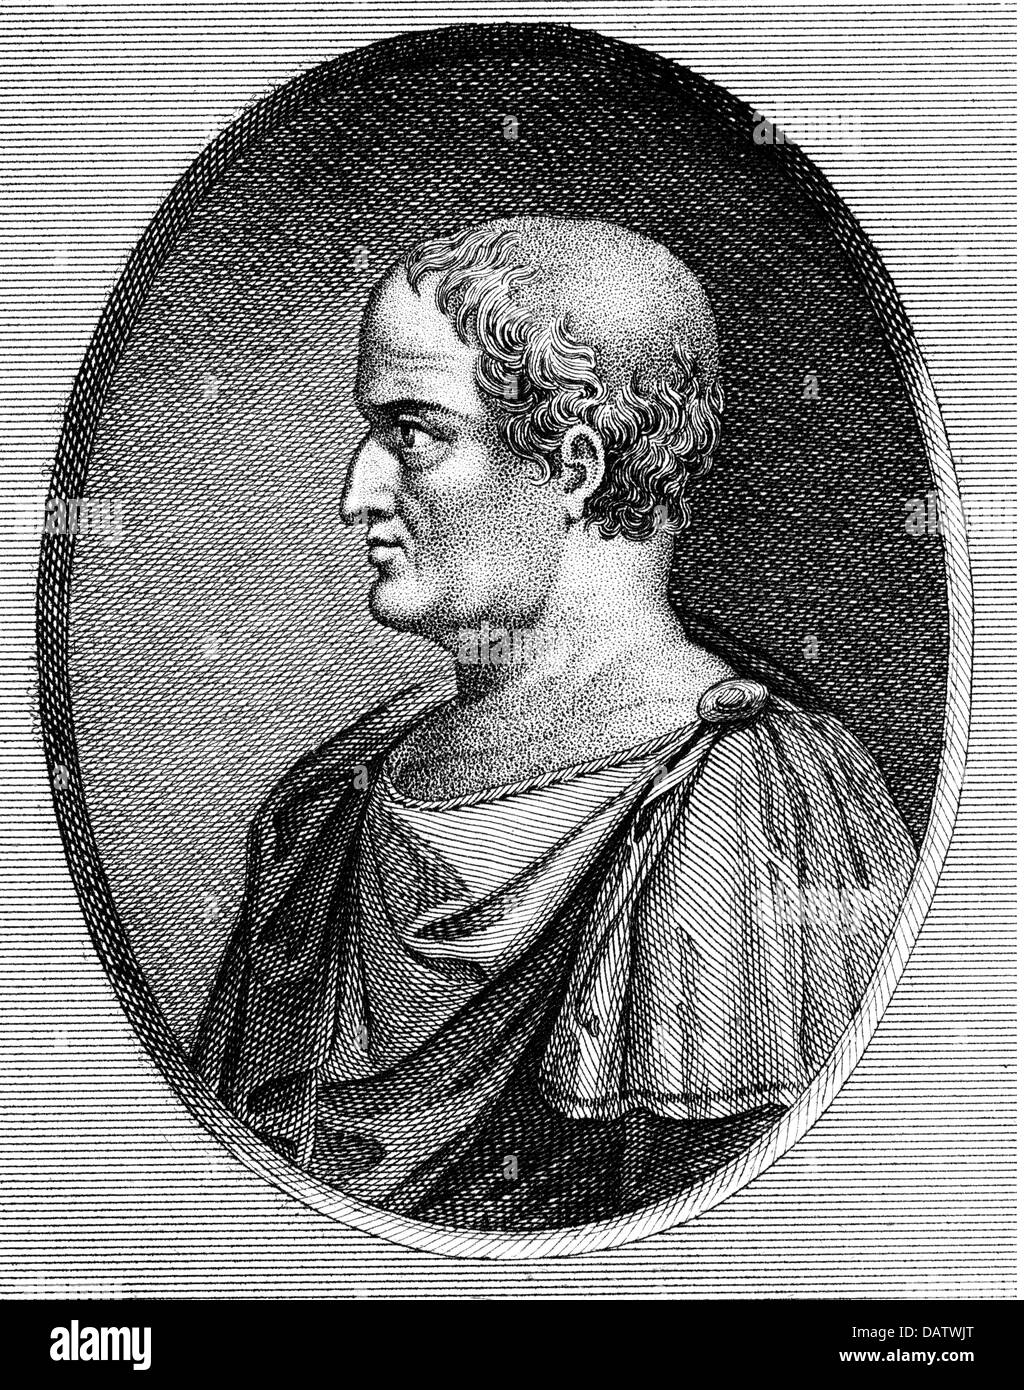 Solon, circa 640 - circa 560 BC, soffitta politico, legislatore, ritratto, profilo incisione su rame, circa del XVIII secolo, artista del diritto d'autore non deve essere cancellata Foto Stock